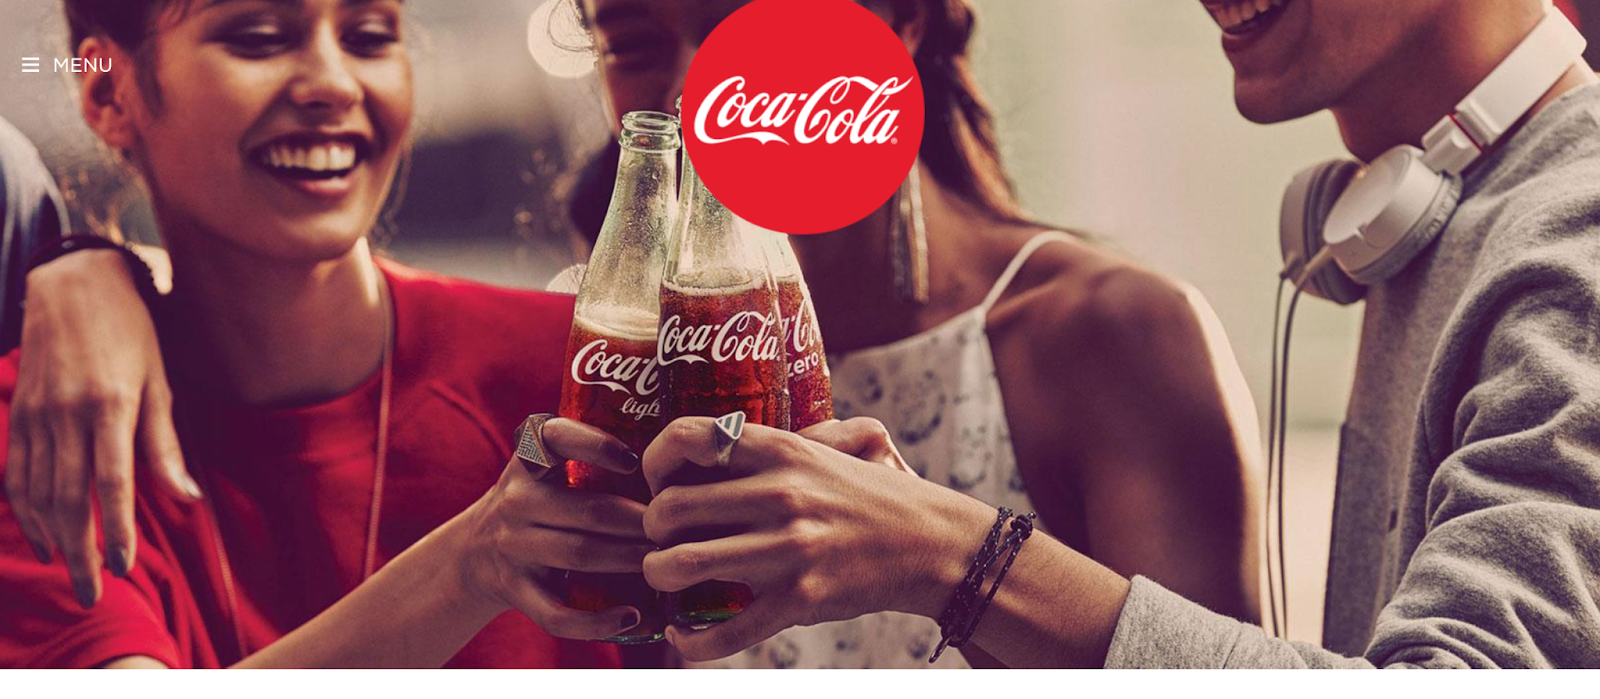 coca cola website